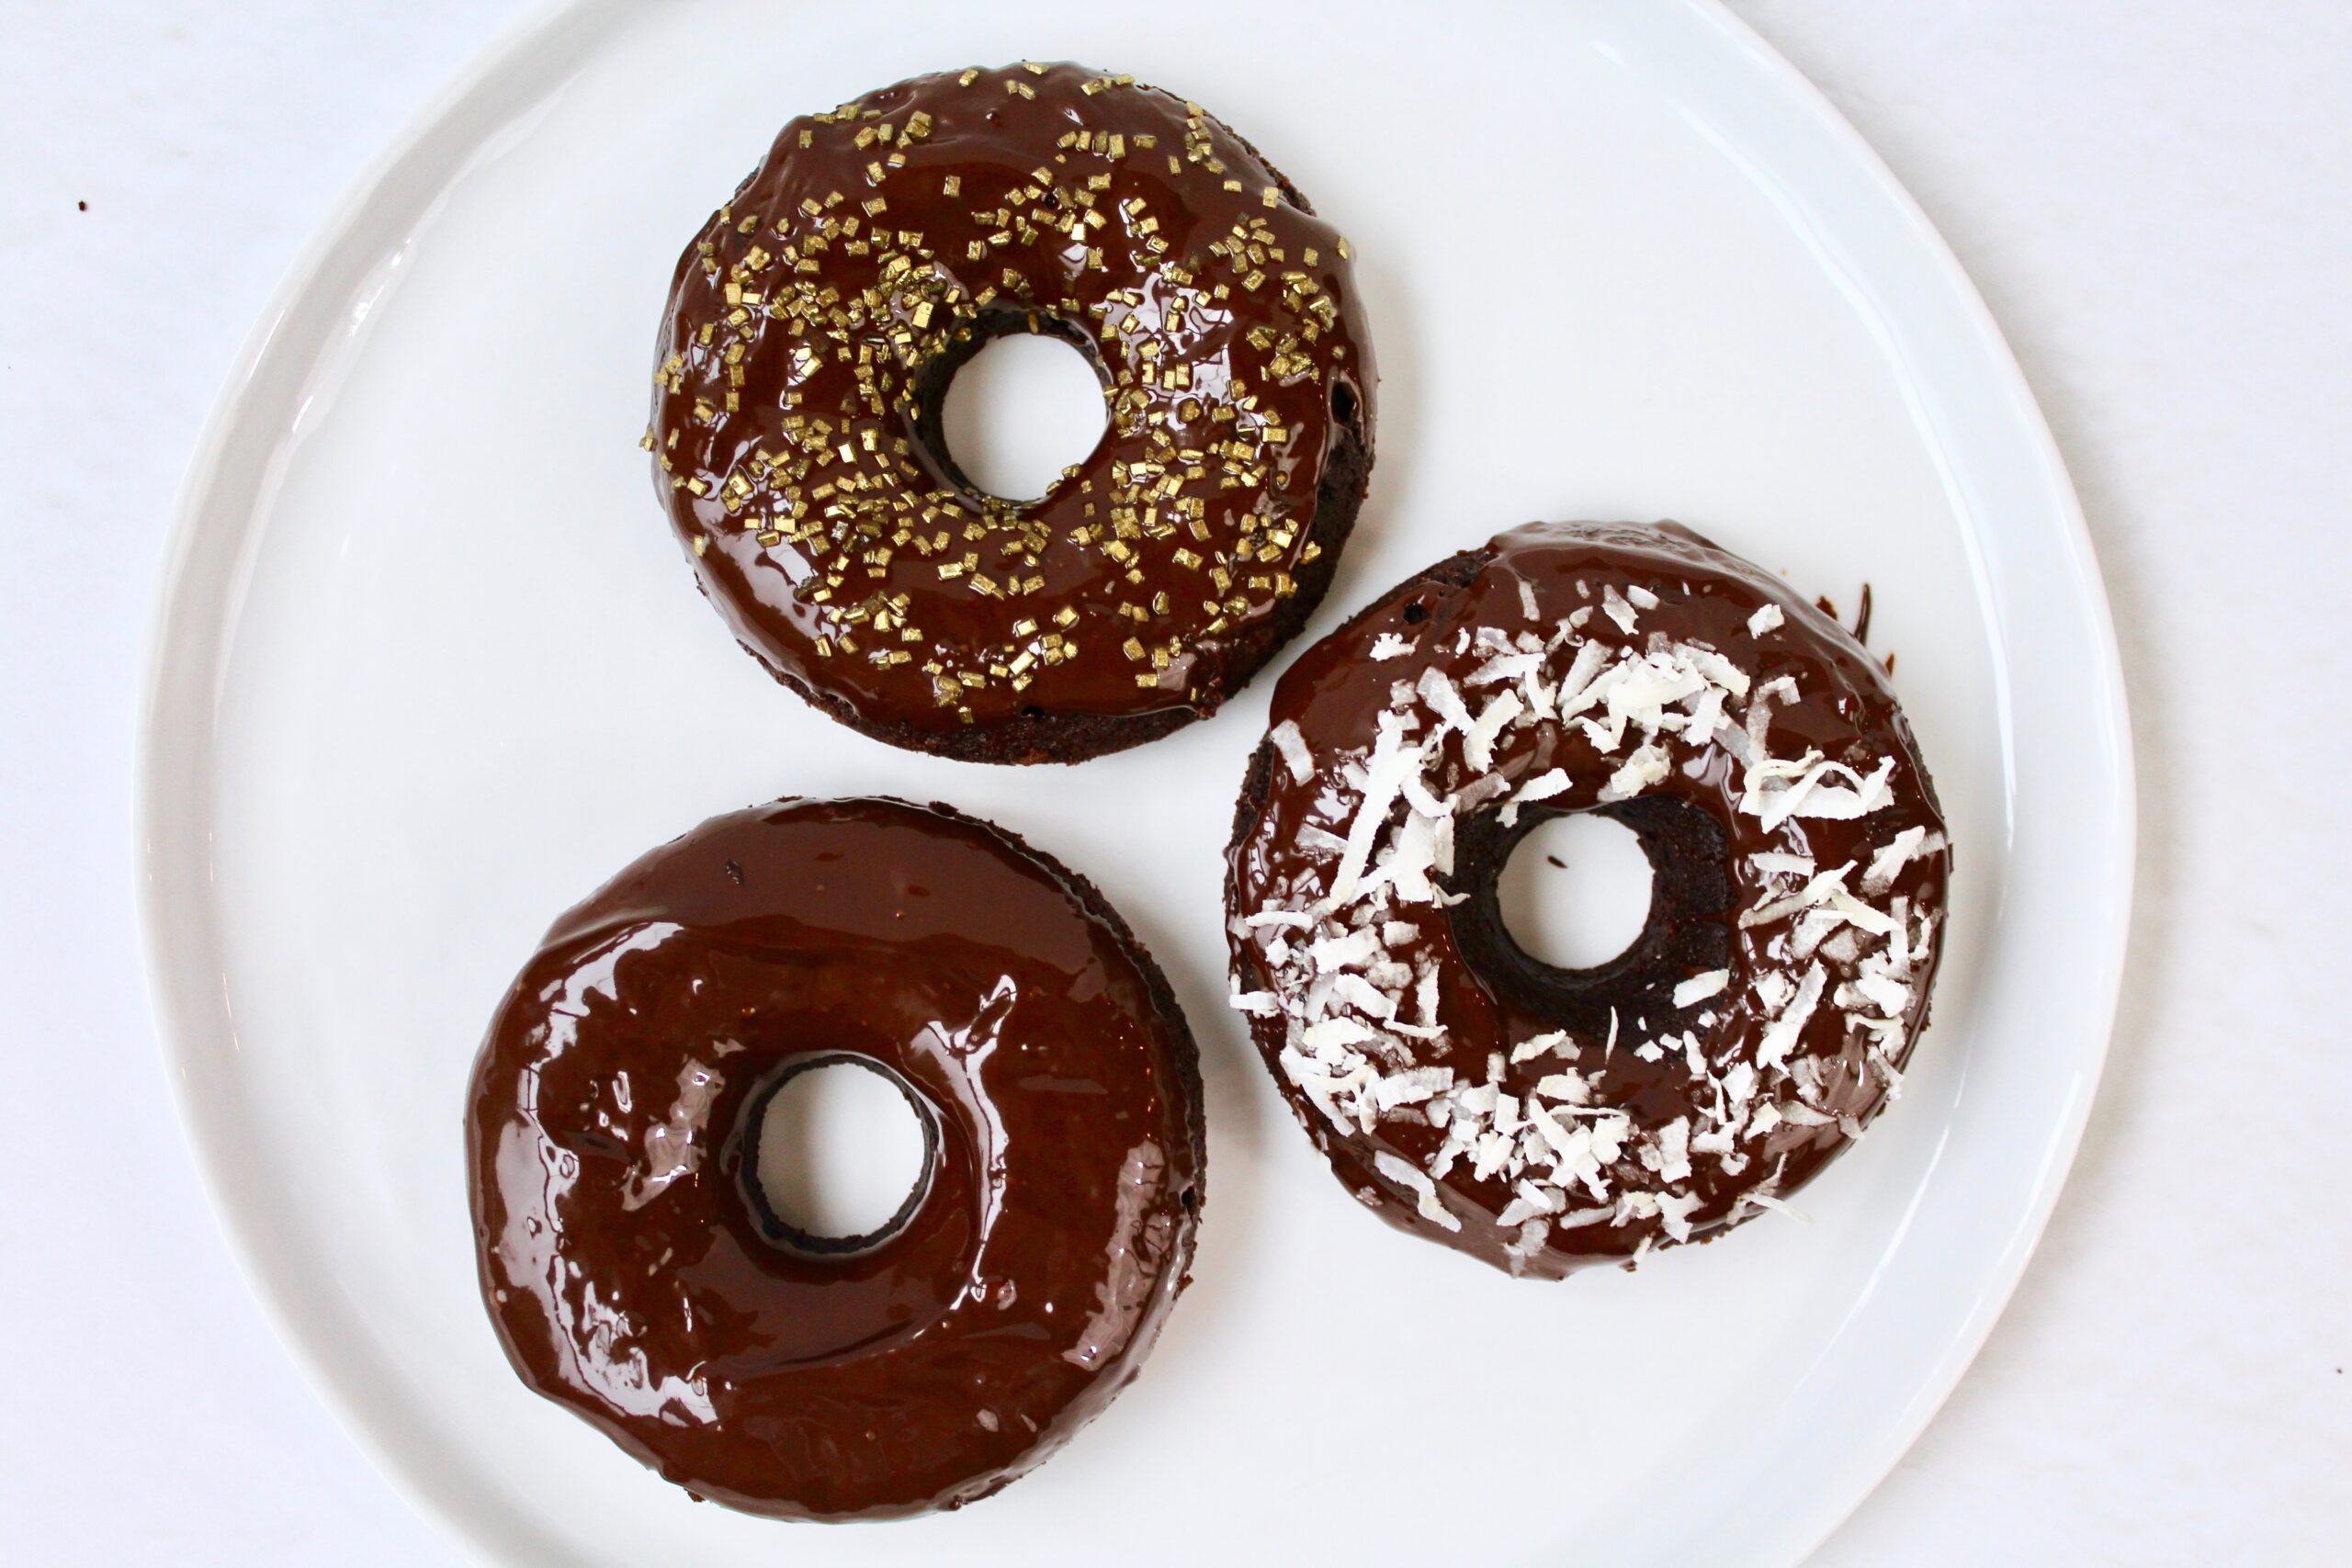 Chocolate Donuts with Chocolate Ganache Glaze (vegan, gf)